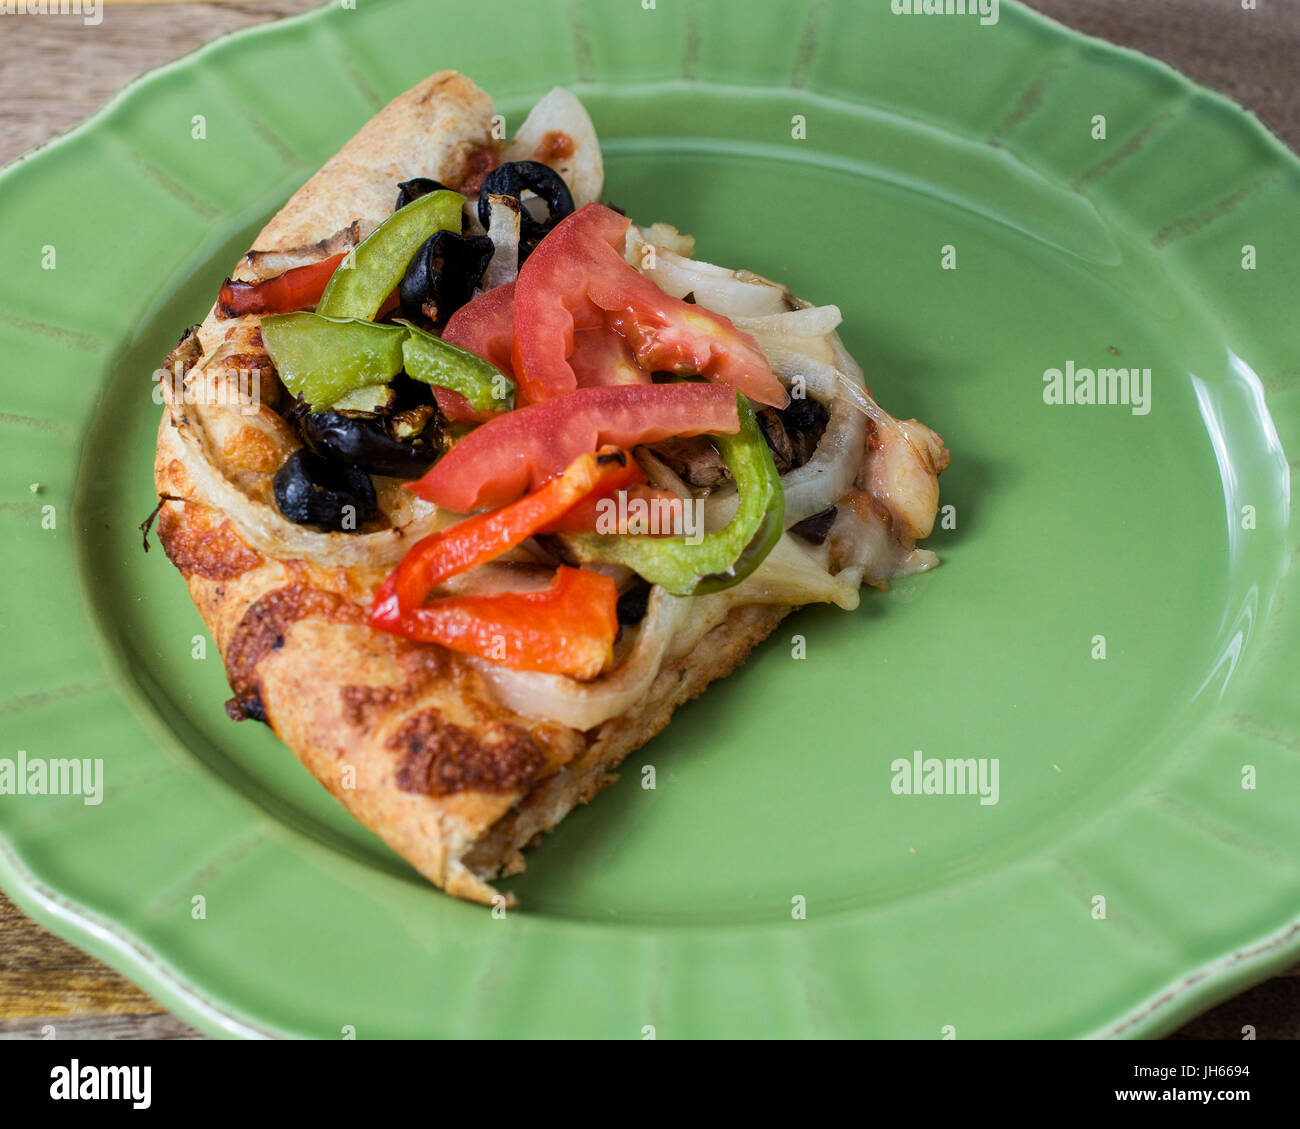 Gros plan sur pizza végétarienne avec tomates, olives noires, champignons, oignons, poivrons et mozzarella, sur plaque verte, contre fond de bois Banque D'Images